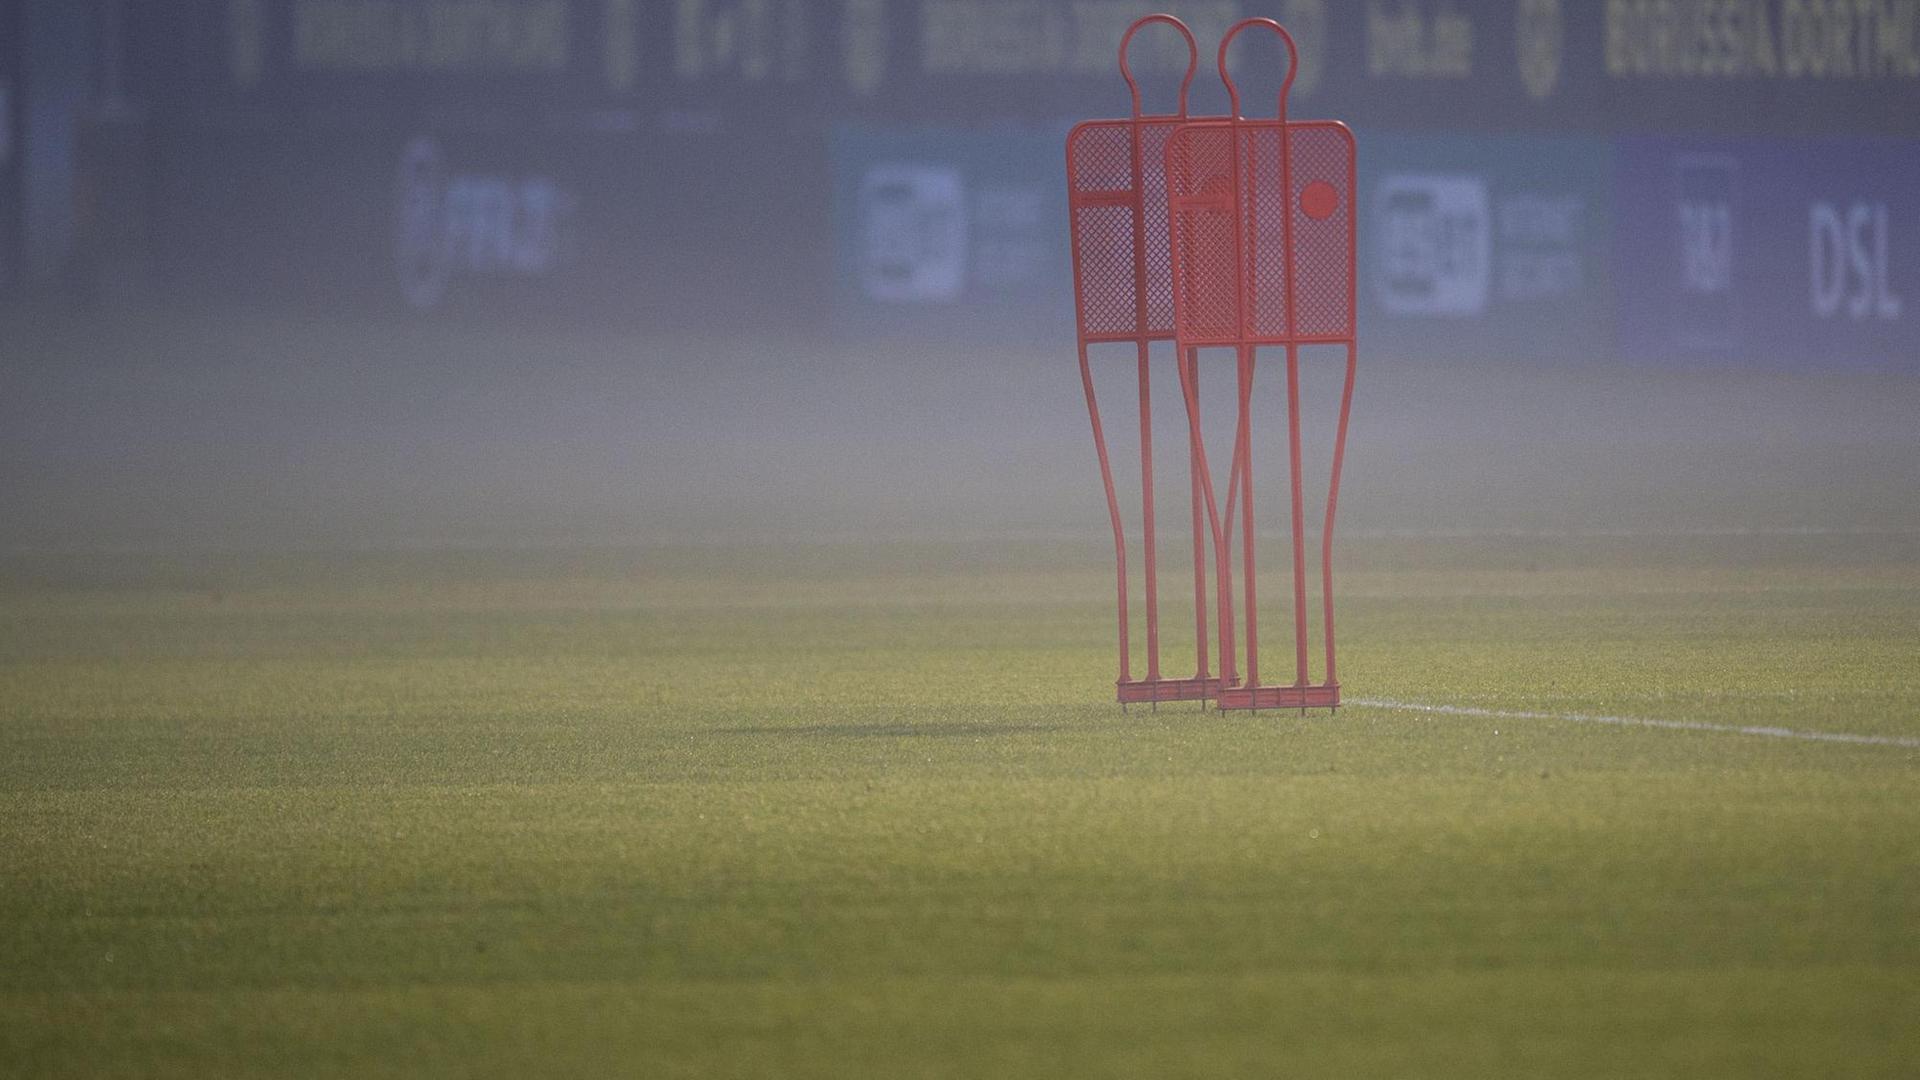 Das verwaiste Trainingsgelände von Borussia Dortmund liegt im Nebel.